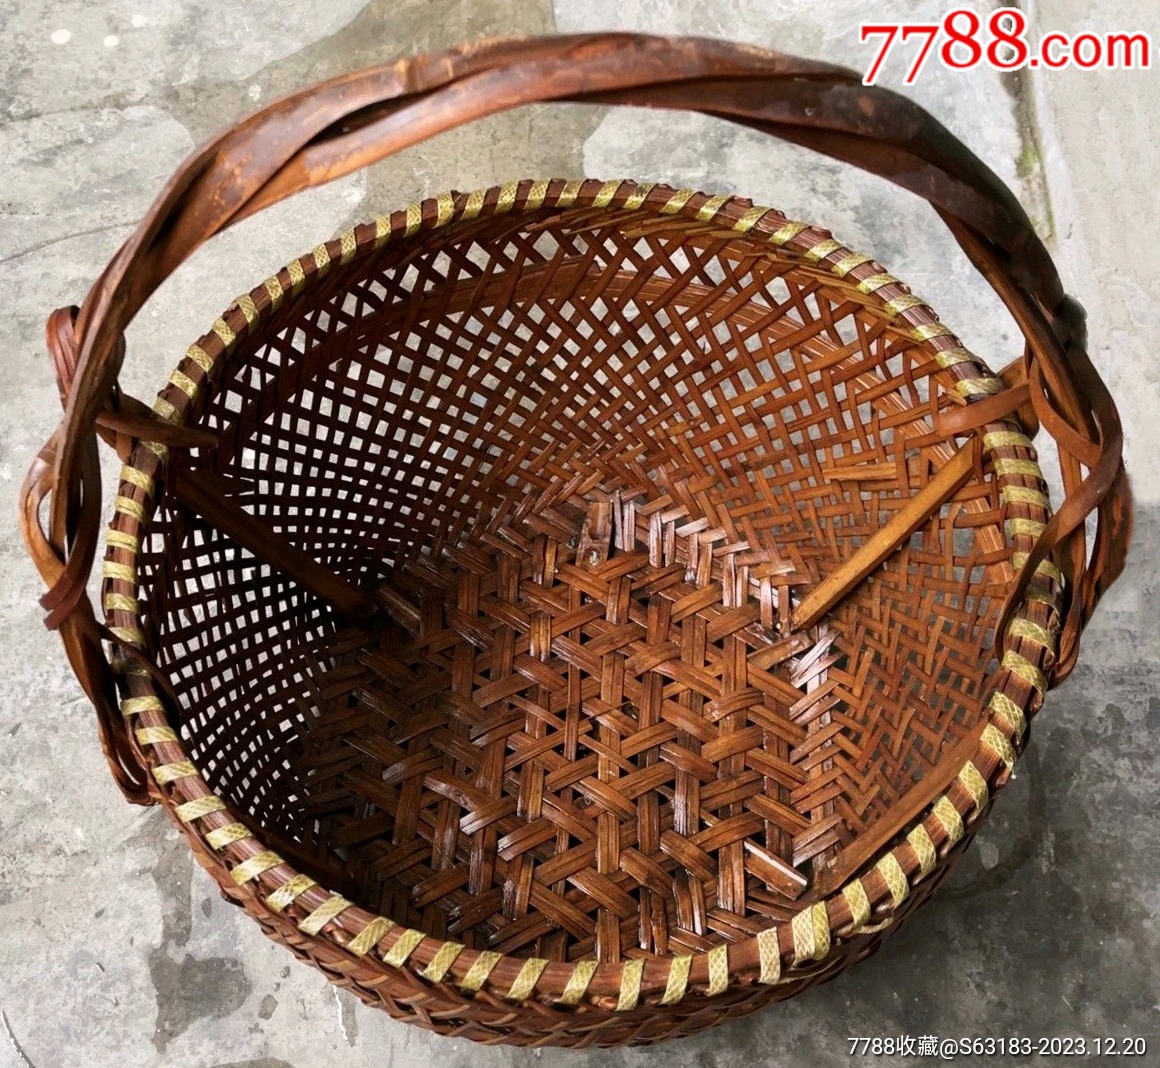 老的纯手工编织竹篮子一只品相非常好非常结实高43厘米口径35厘米品